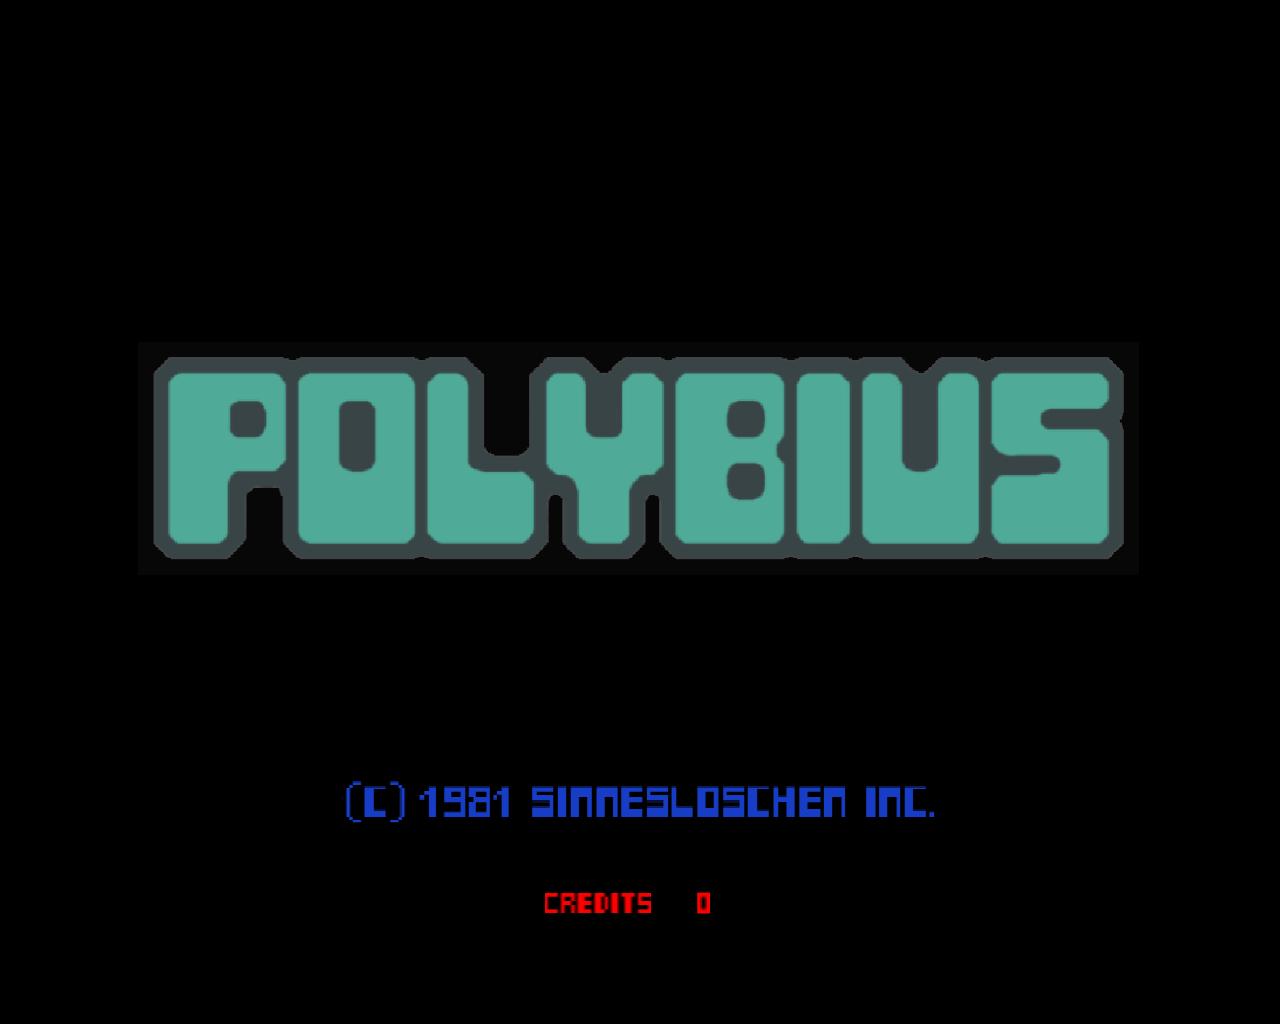 神秘街机Polybius 美国都市传说 - 神秘街机Polybius 都市传说